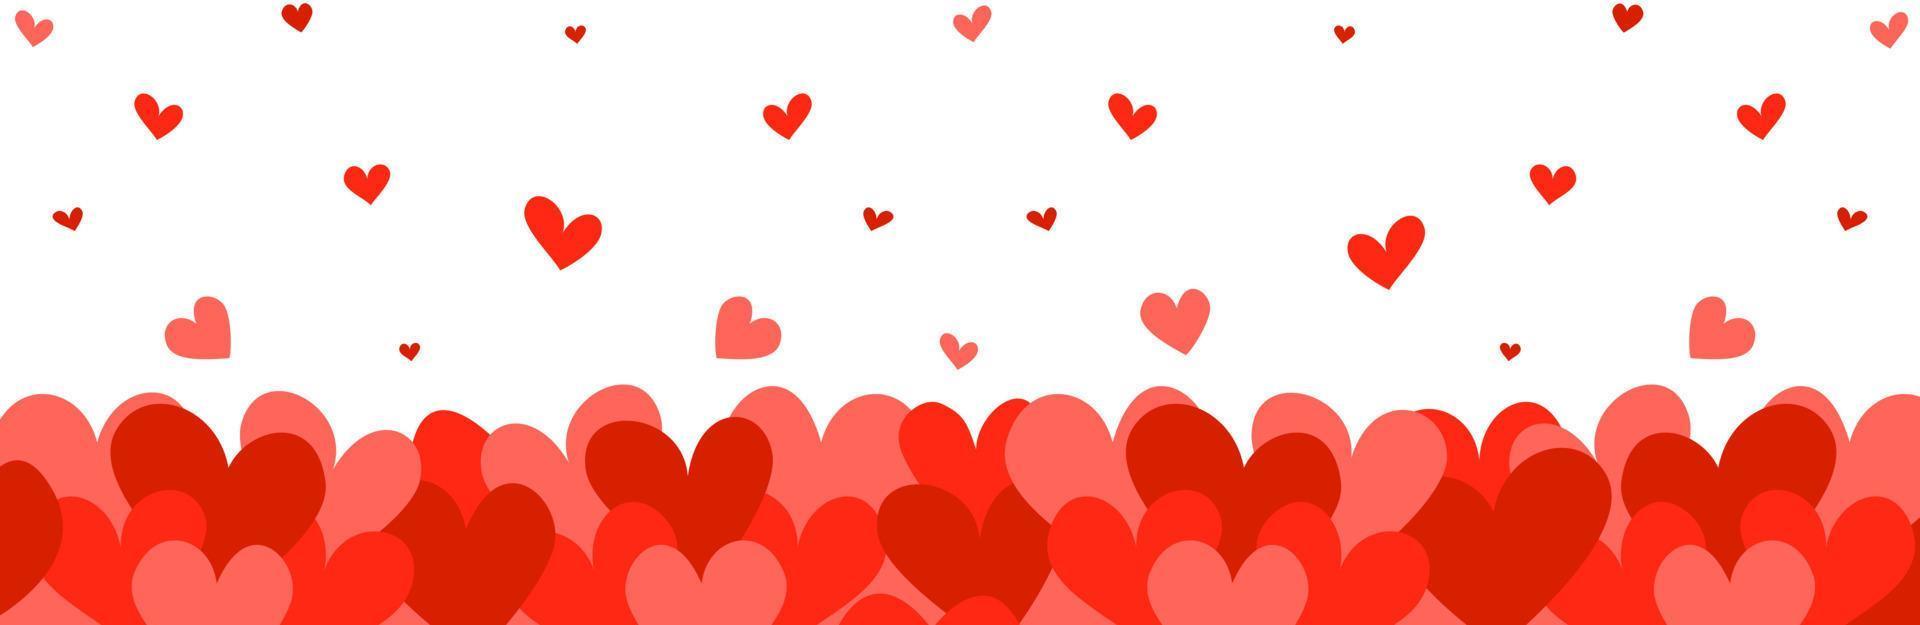 fondo digital del día de san valentín de corazones para sitio web, diseño de volante, banner. amor. ilustración vectorial en estilo plano. vector